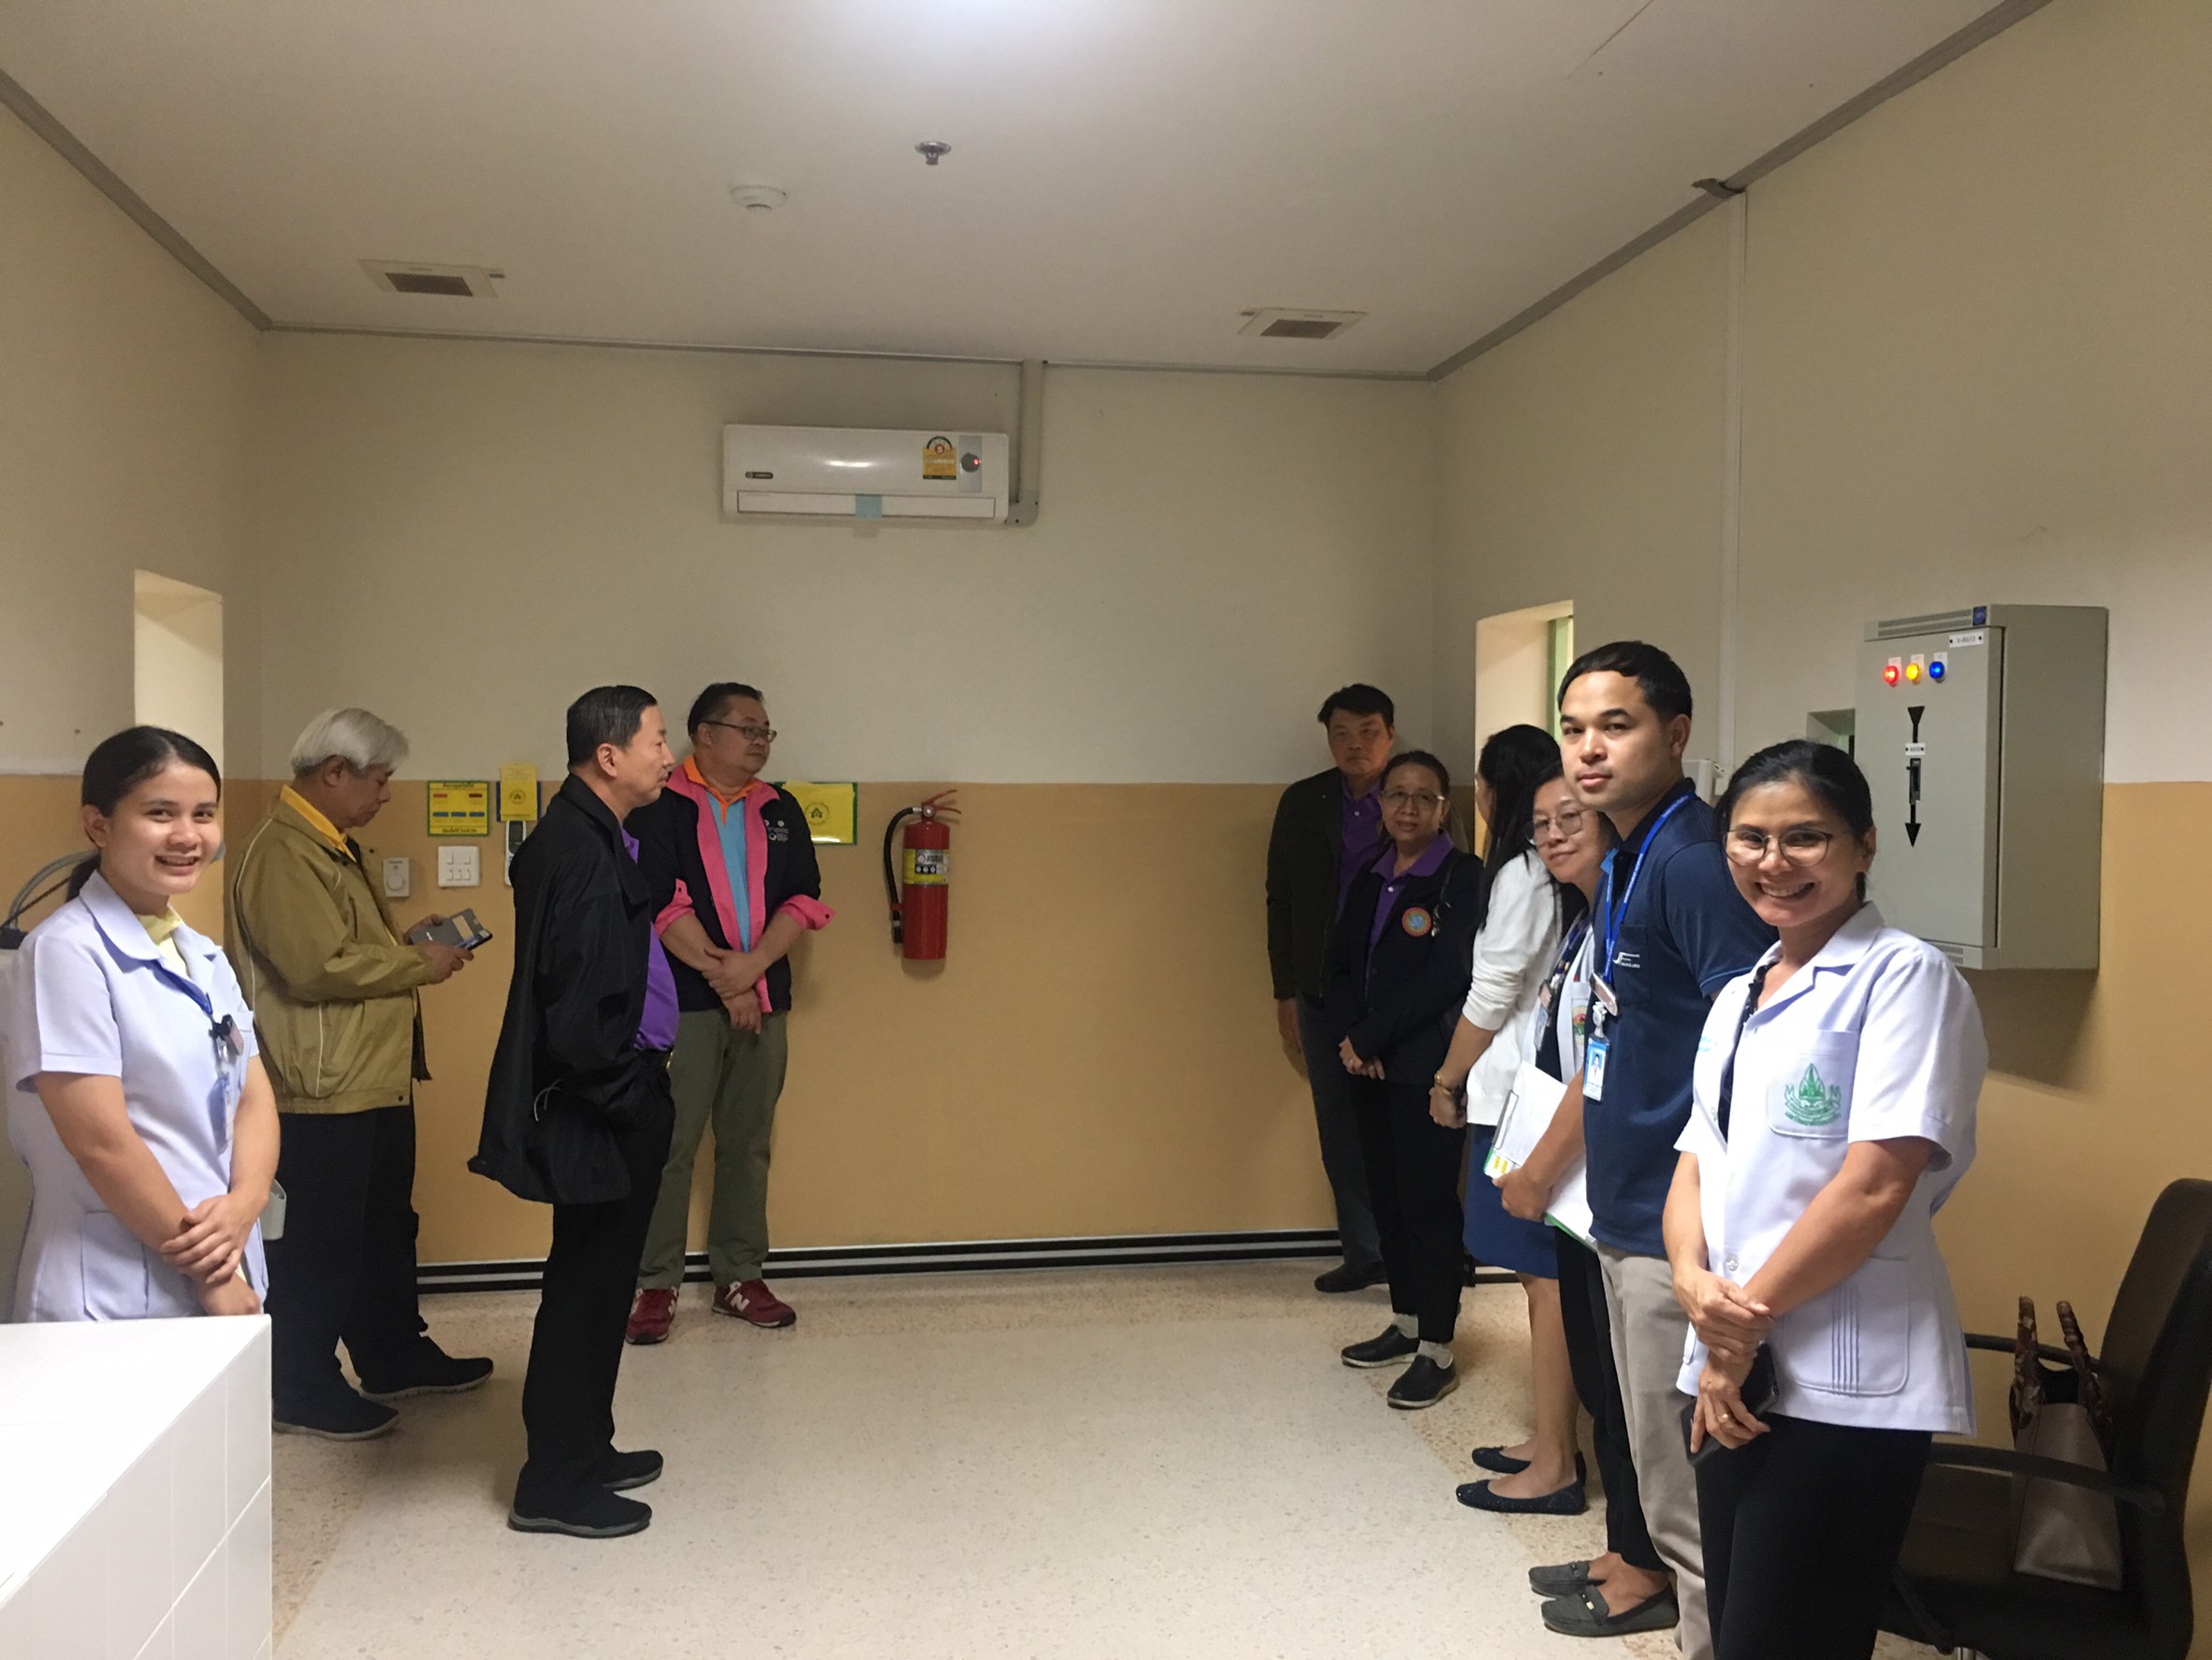 ประชุมวิชาการร่วมกับรังสีการแพทย์แห่งประเทศไทย ครั้งที่17 27-29 พ.ย. - พร้อมเข้าเยี่ยมและให้กำลังใจหน่วยงานรังสีวิทยาในพื้นที่จังหวัดอุบลราชธานีระหว่างวันที่ 25-26 พฤศจิกายน 2562 71